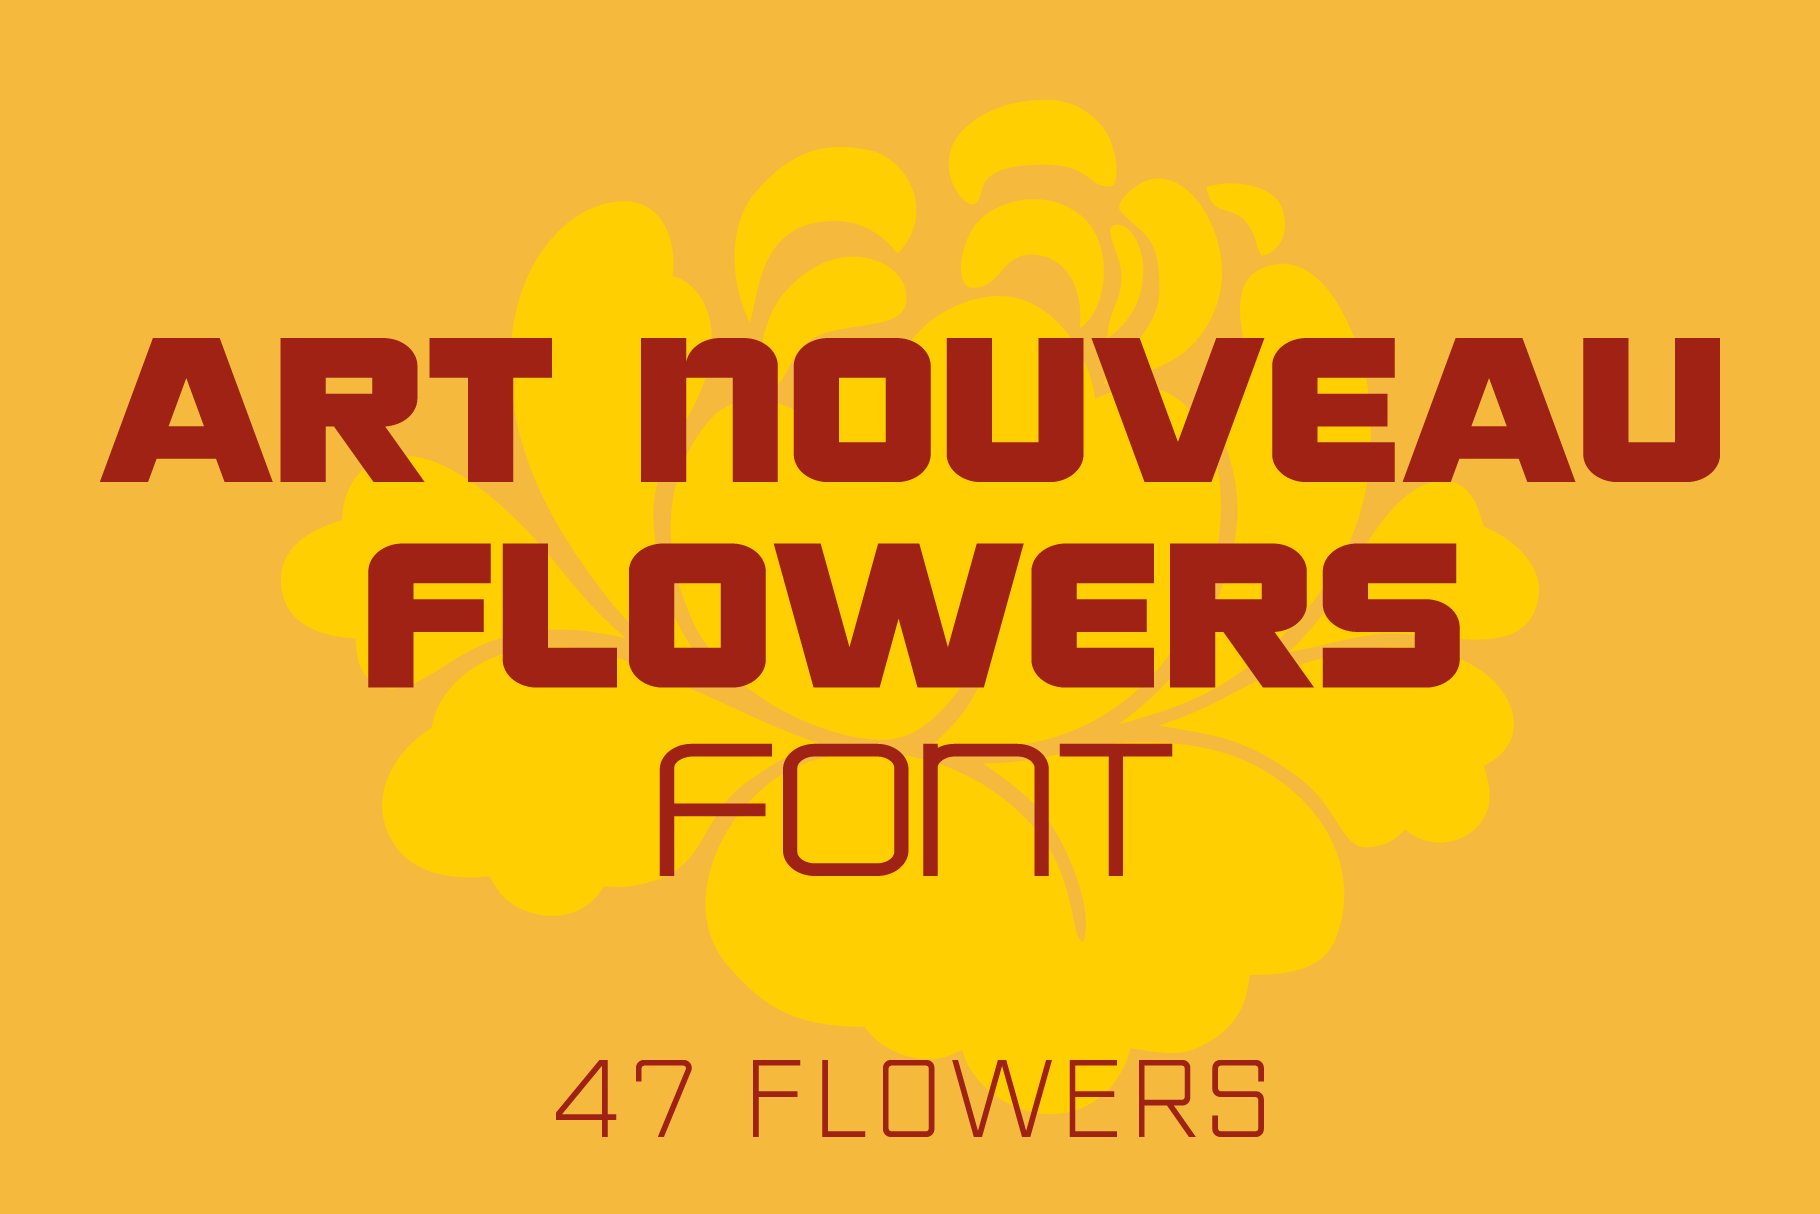 Art Nouveau Flowers Font cover image.